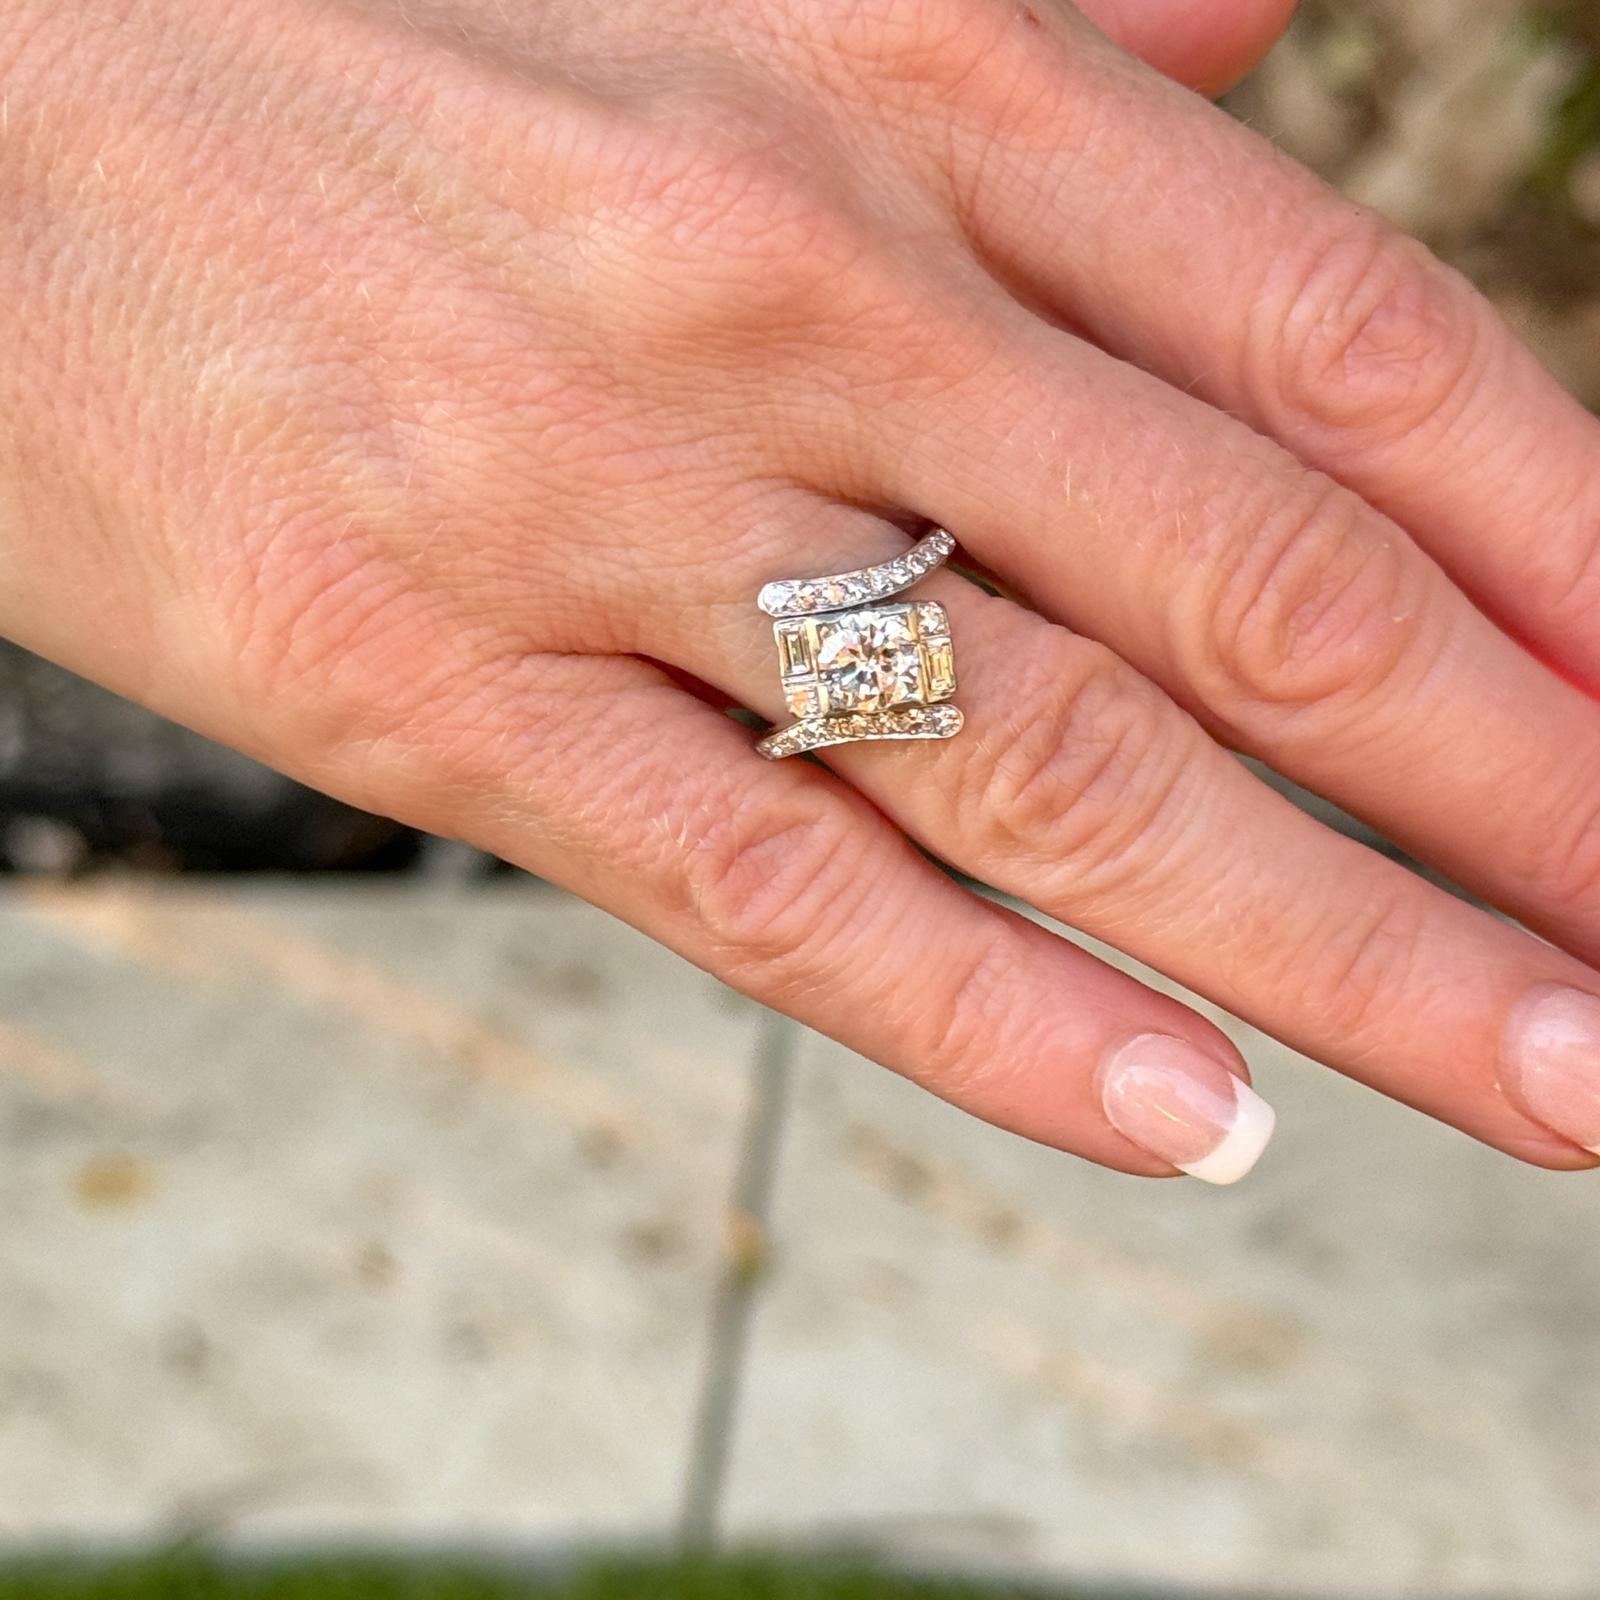 Diamant-Bypass-Ring aus den 1940er Jahren, handgefertigt aus 14 Karat Weißgold. Der Vintage-Ring besteht aus einem runden Diamanten mit Brillantschliff von etwa 0,88 Karat und 18 seitlichen Diamanten mit einem Gesamtgewicht von etwa 0,44 Karat. Der